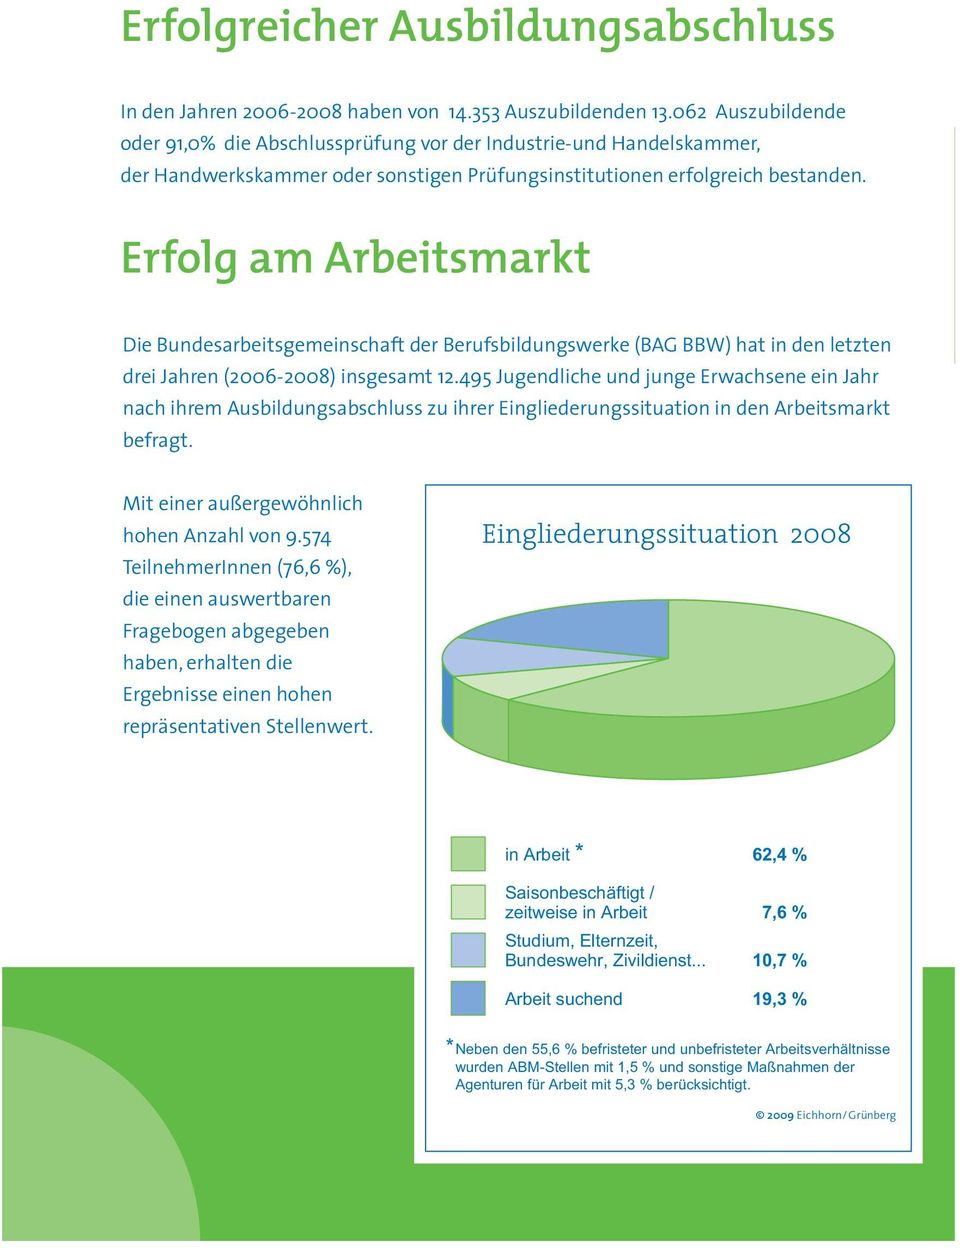 Erfolg am Arbeitsmarkt Die Bundesarbeitsgemeinschaft der e (BAG BBW) hat in den letzten drei Jahren (2006-2008) insgesamt 12.